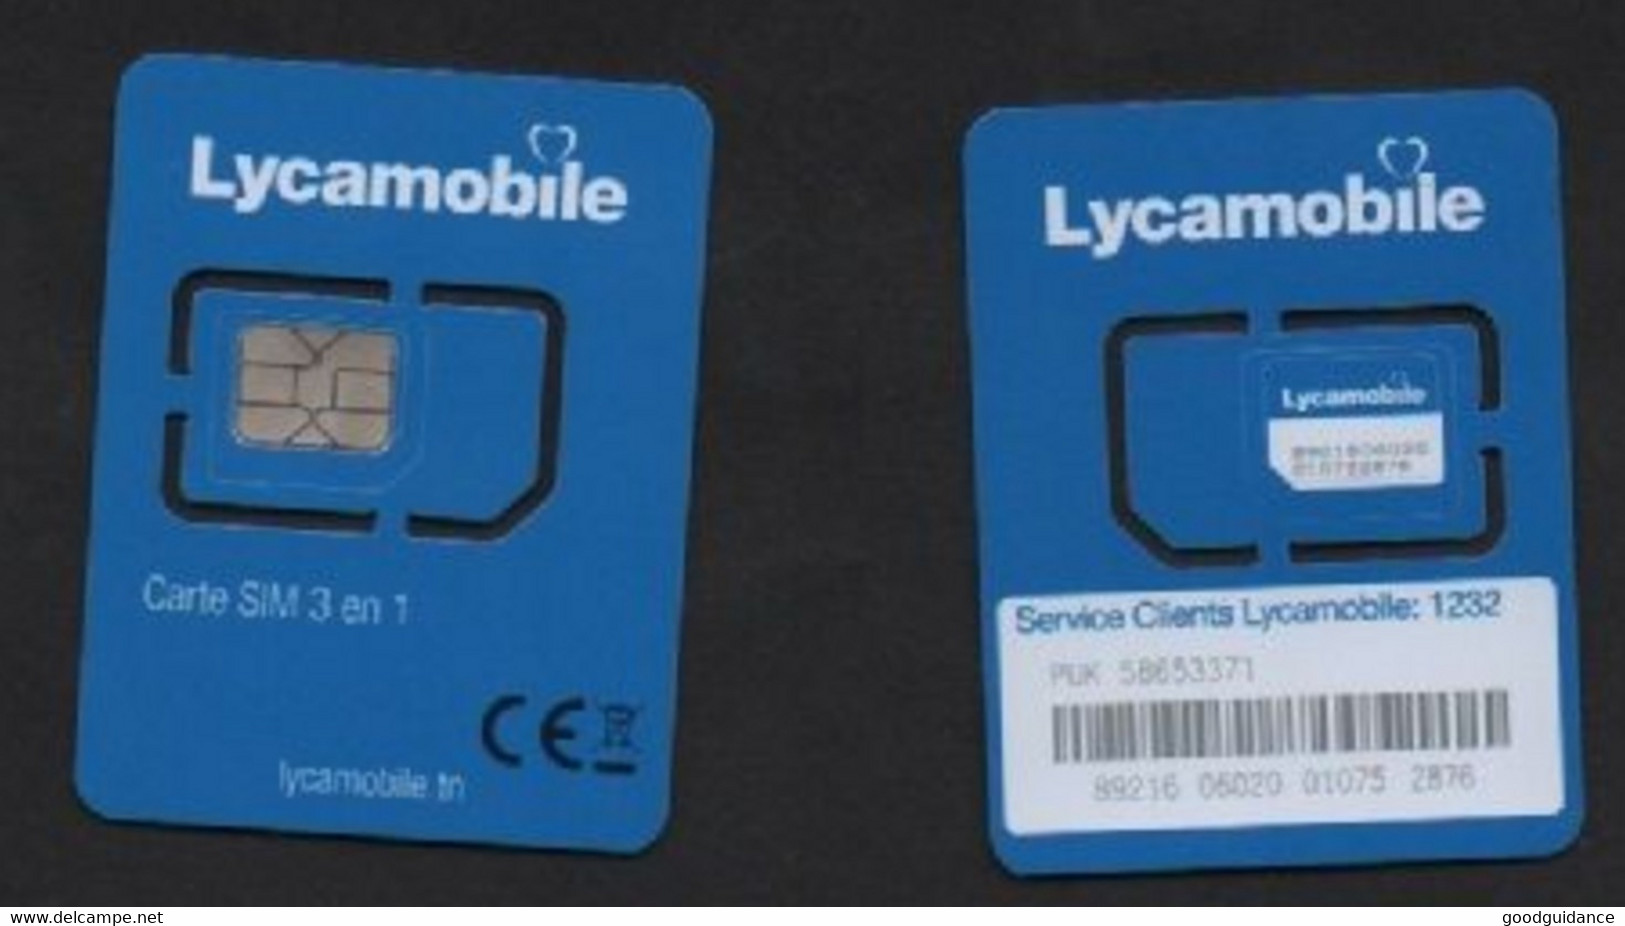 Tunisia- Tunisie - Lycamobile - Mini/Micro/Nano SIM Card 4G - Not Used - Tunisia